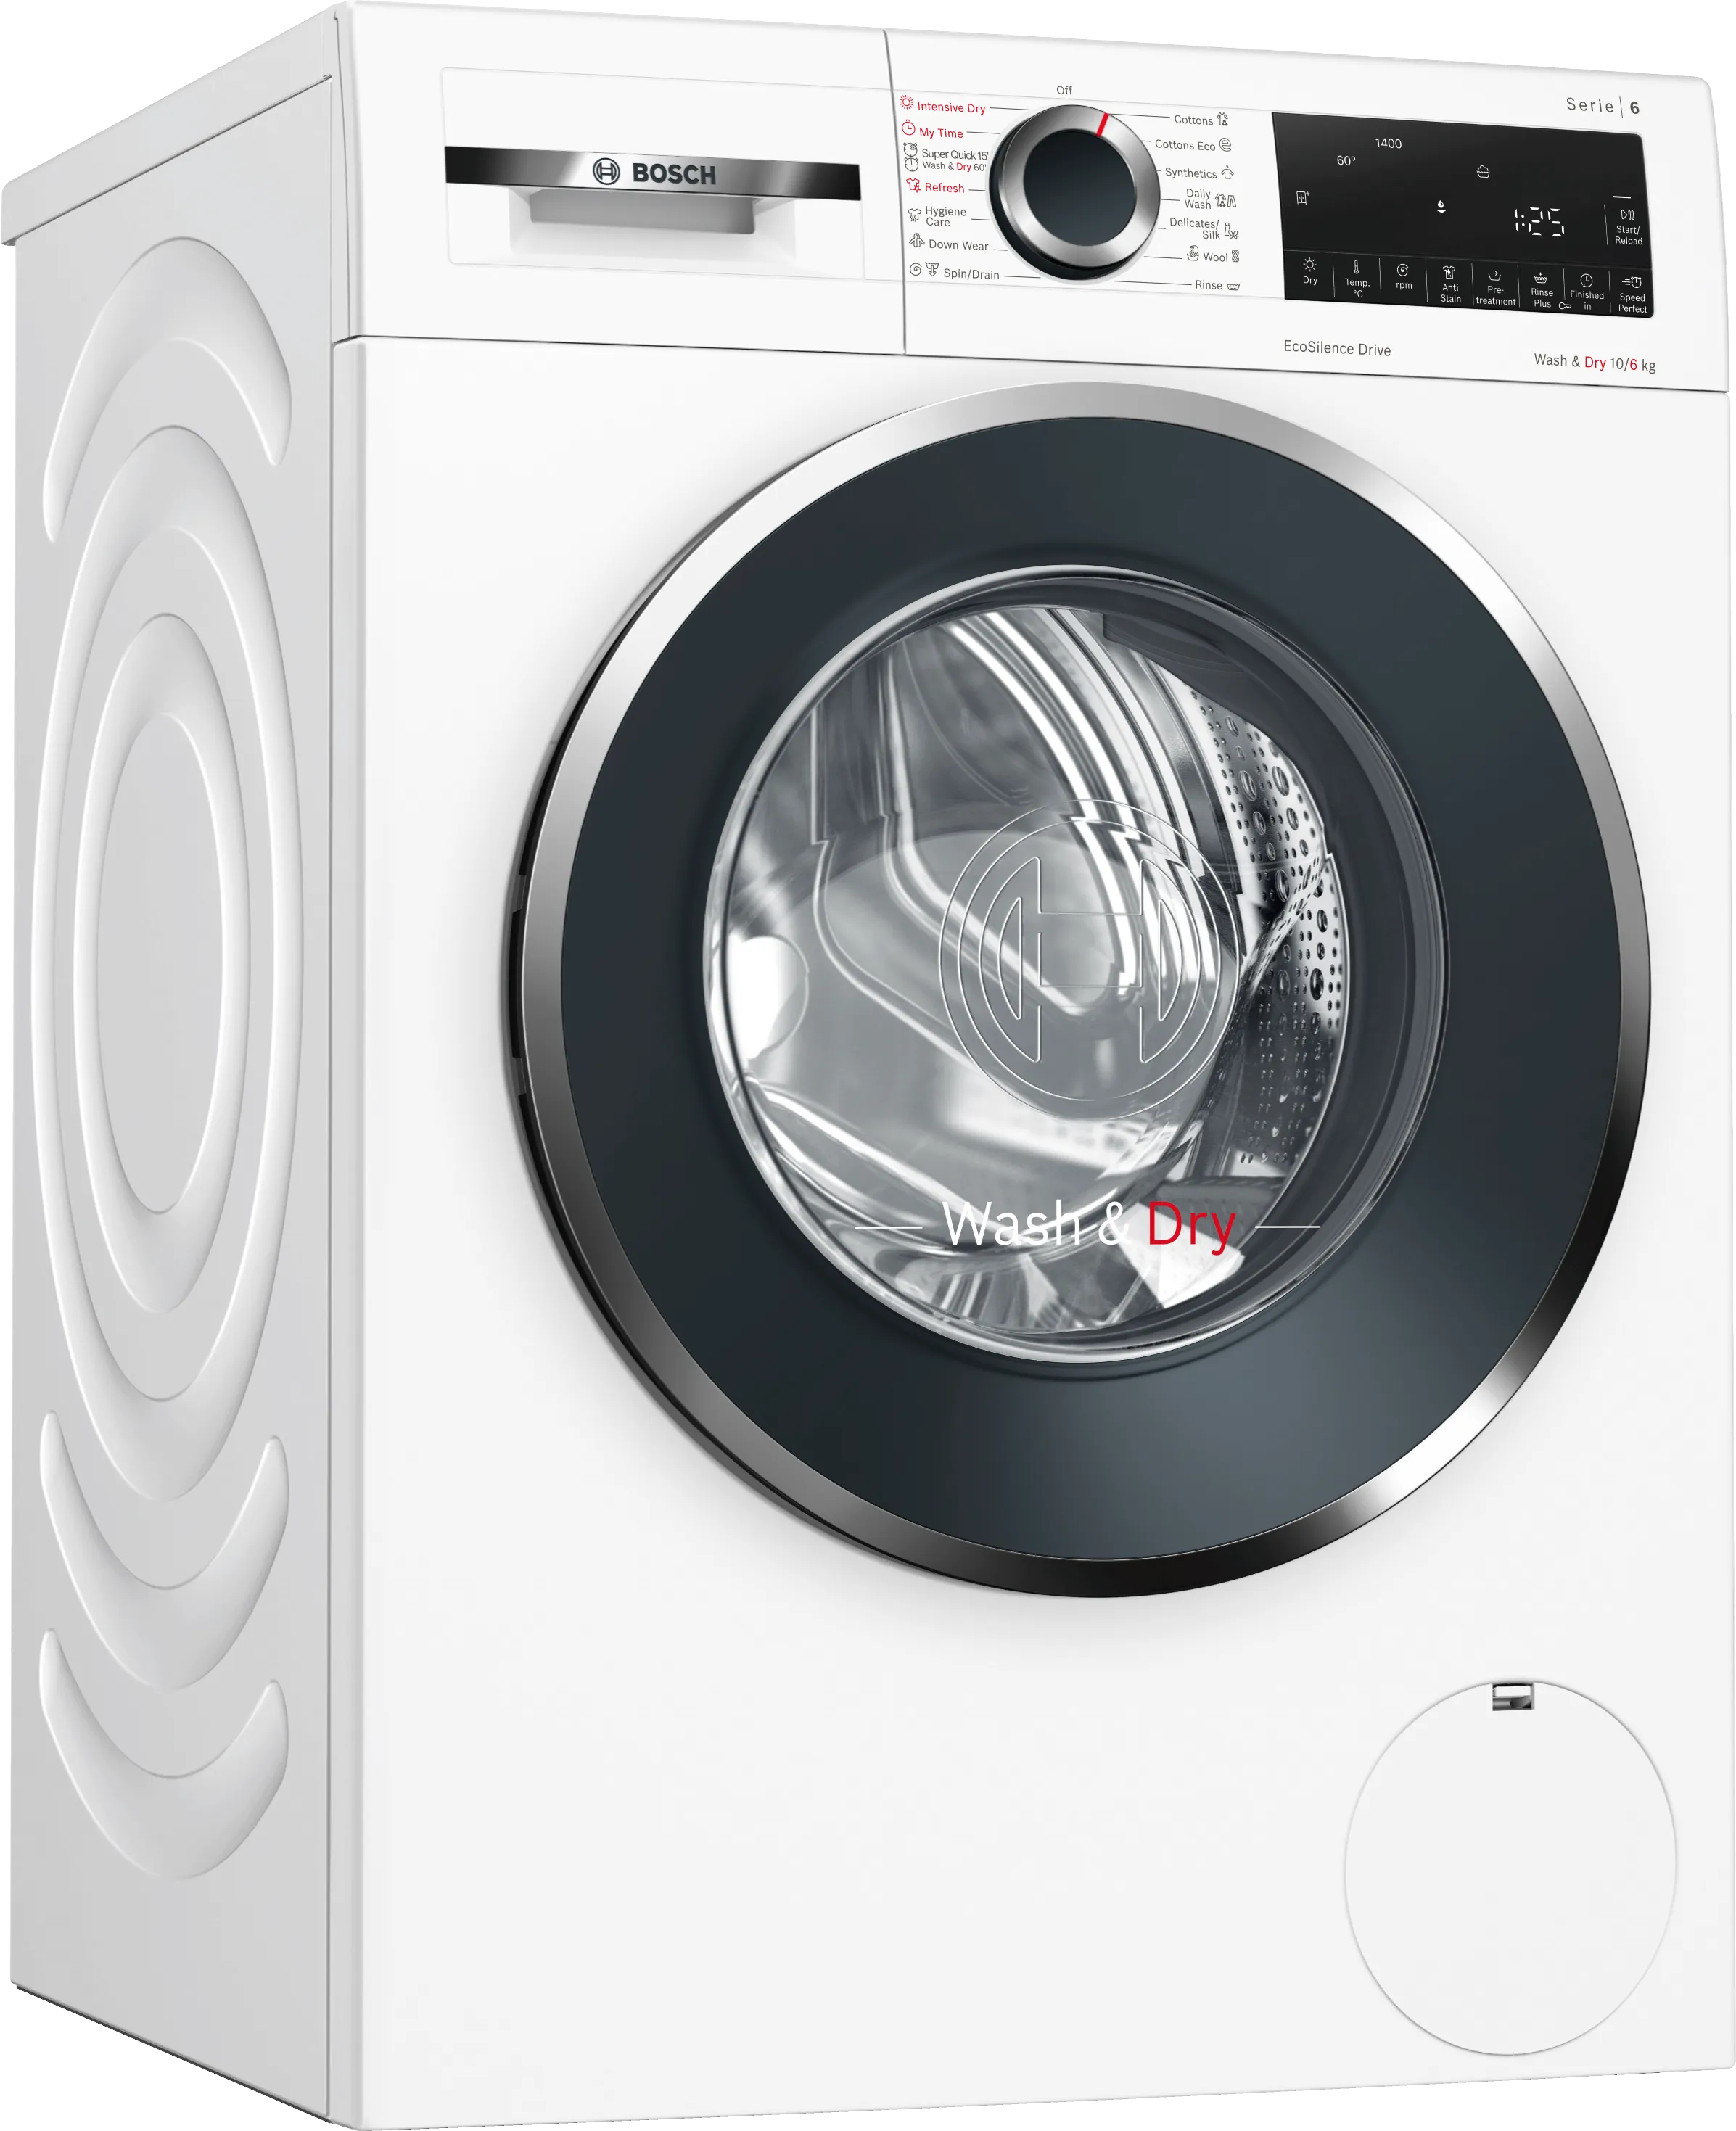 Series 6 Washer Dryer 10/6 kg 1400 rpm 